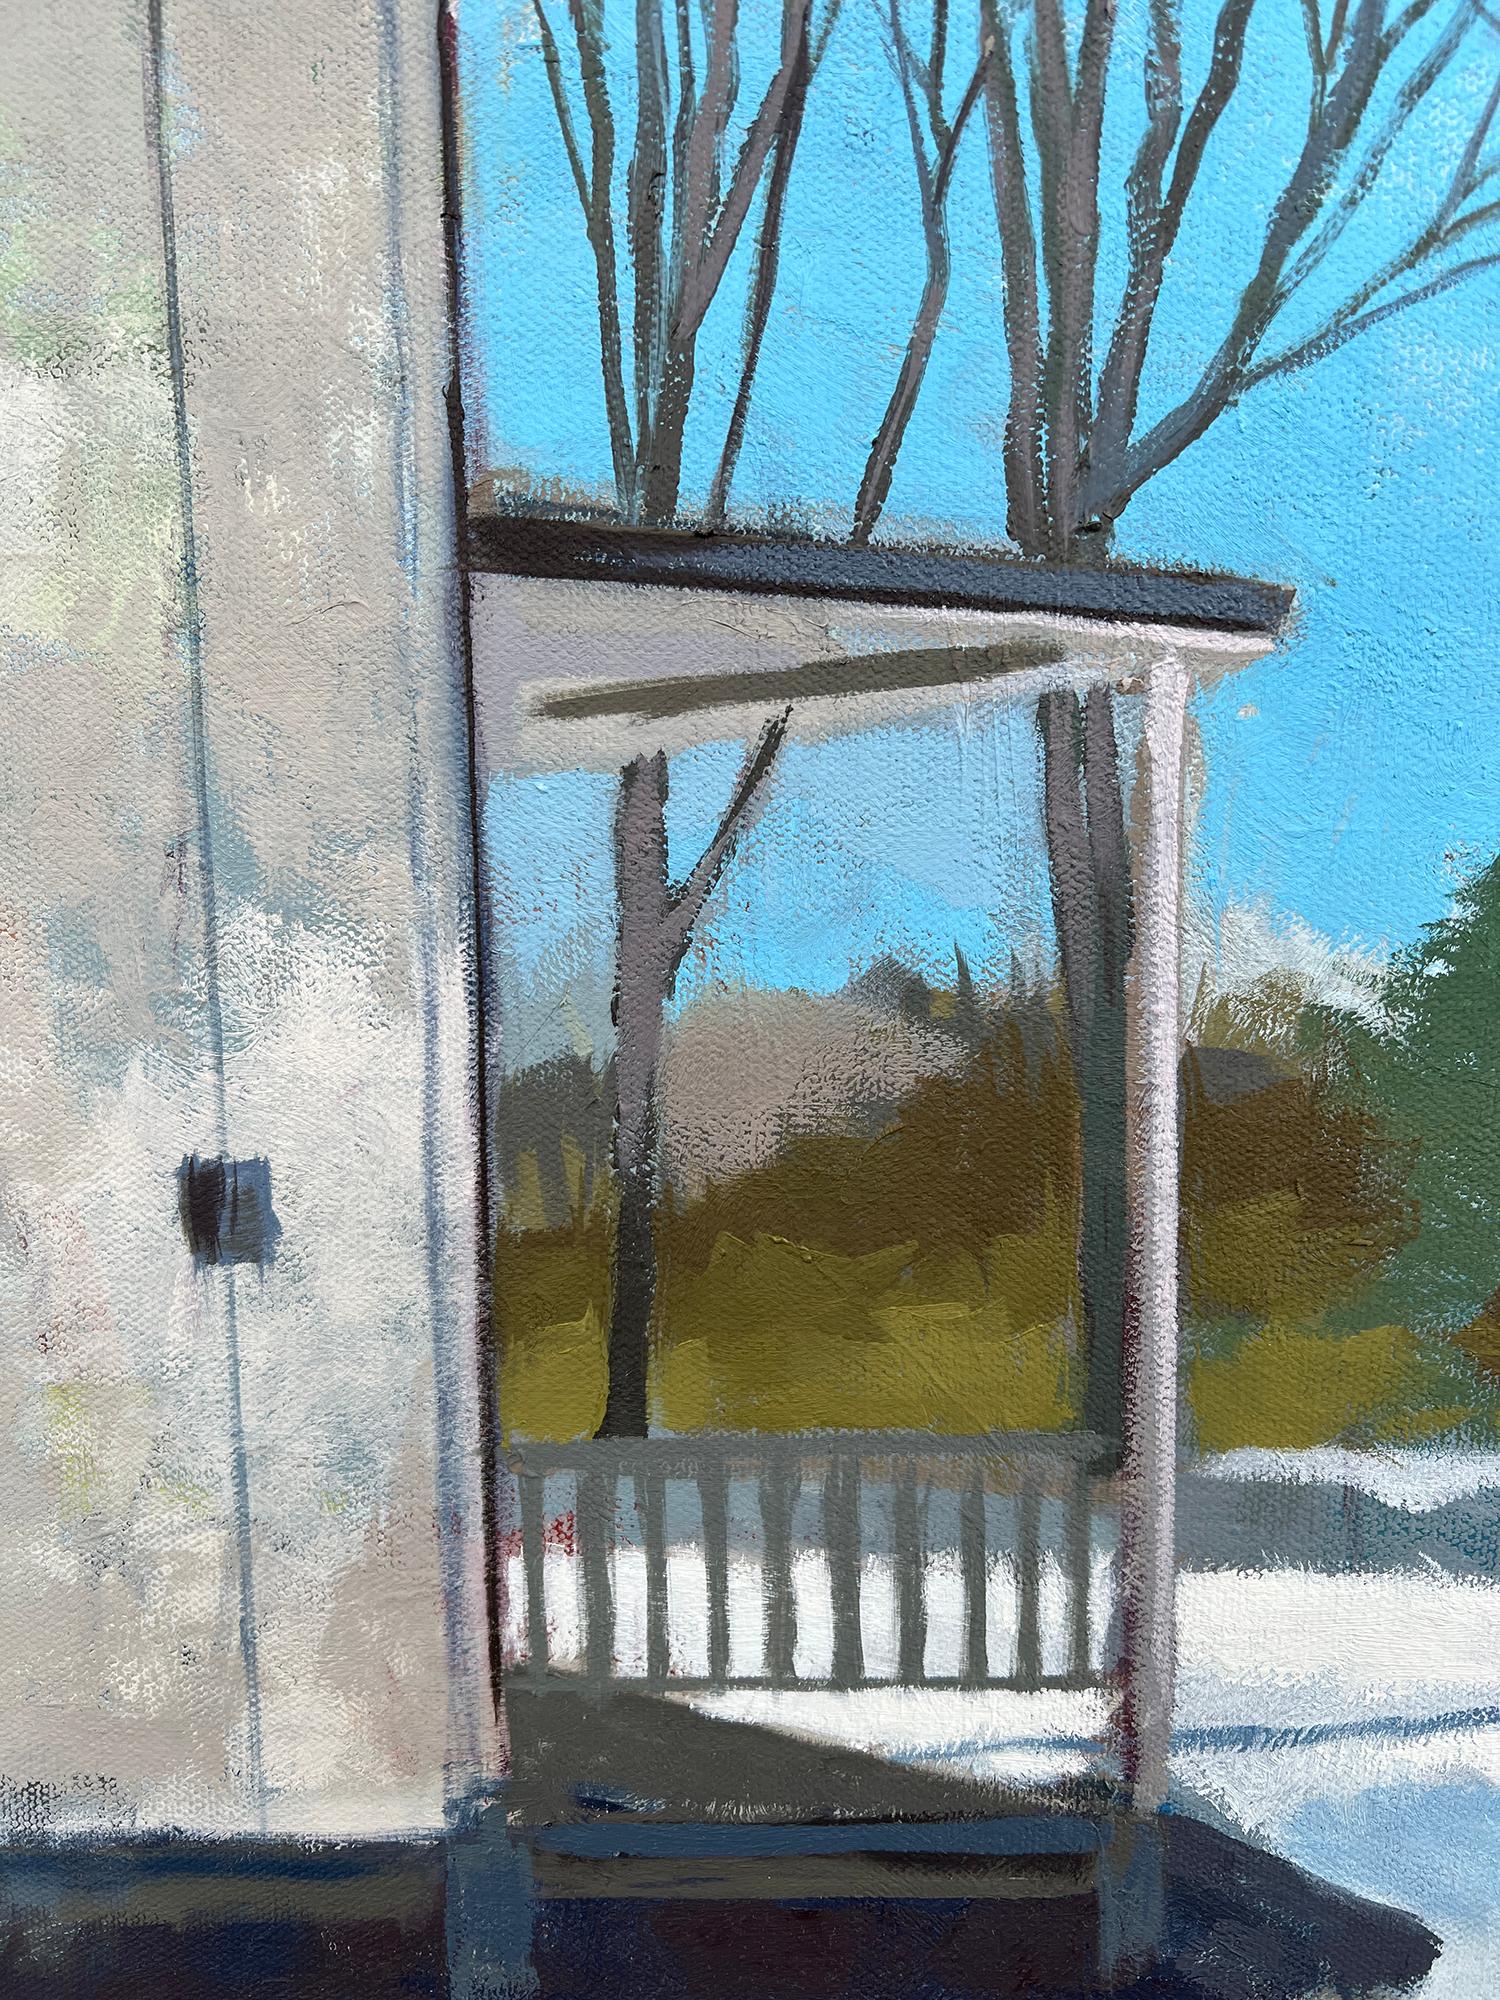 <p>Kommentare des KünstlersAn einem kalten Wintertag liegt Schnee in einer Kleinstadt.<br> Zwischen den kahlen Bäumen steht ein zweistöckiges Haus, das sich in der sanften Wärme der Sonne sonnt. Die Komposition bietet eine Atmosphäre, in der man die